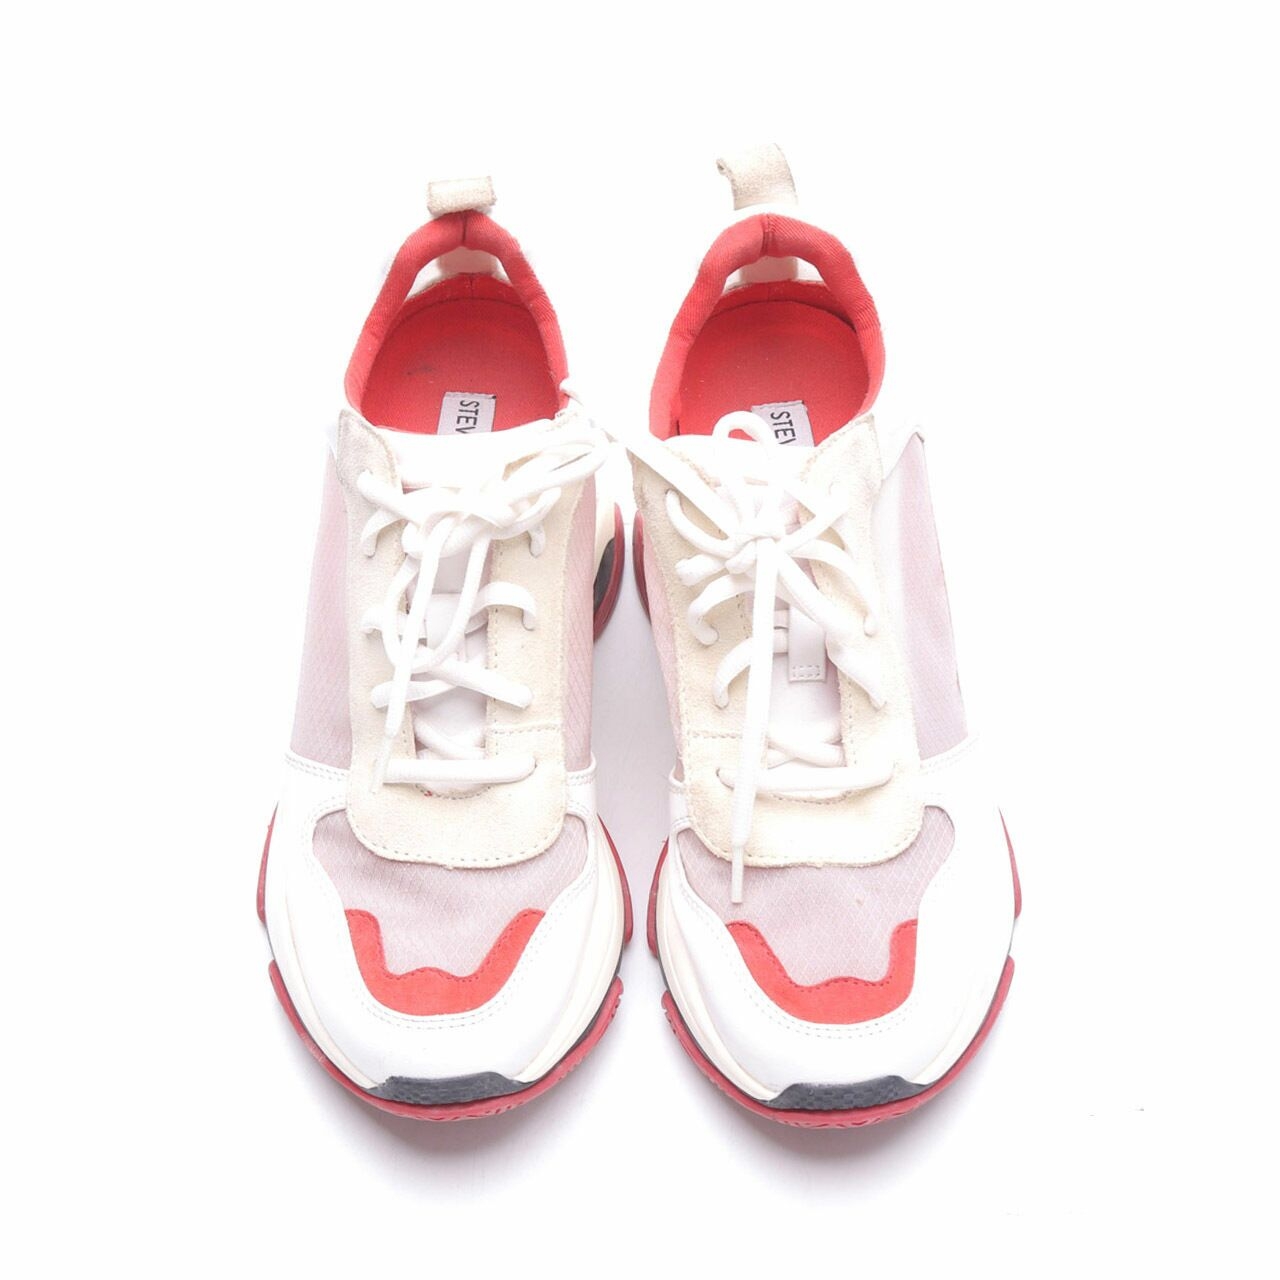 Steve Madden Red & White Sneakers